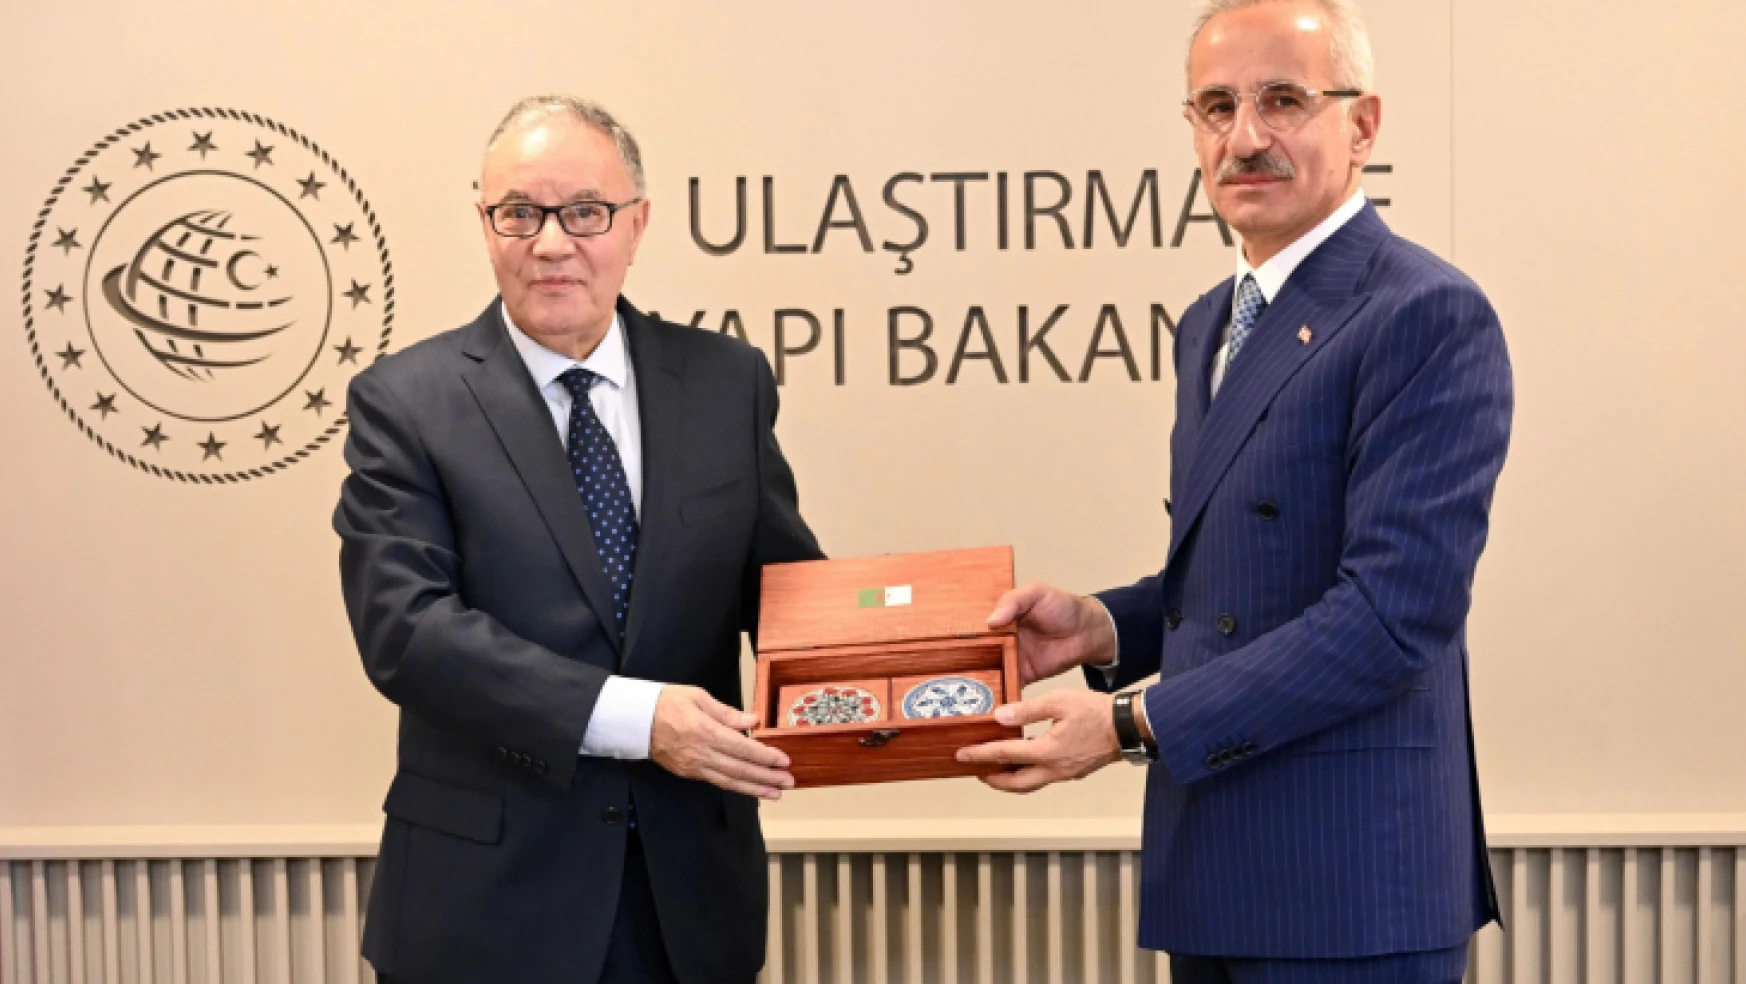 Ulaştırma ve Altyapı Bakanı Abdulkadir Uraloğlu: 'Kardeş İki Ülke Arasındaki İlişkileri Daha da Geliştireceğiz'